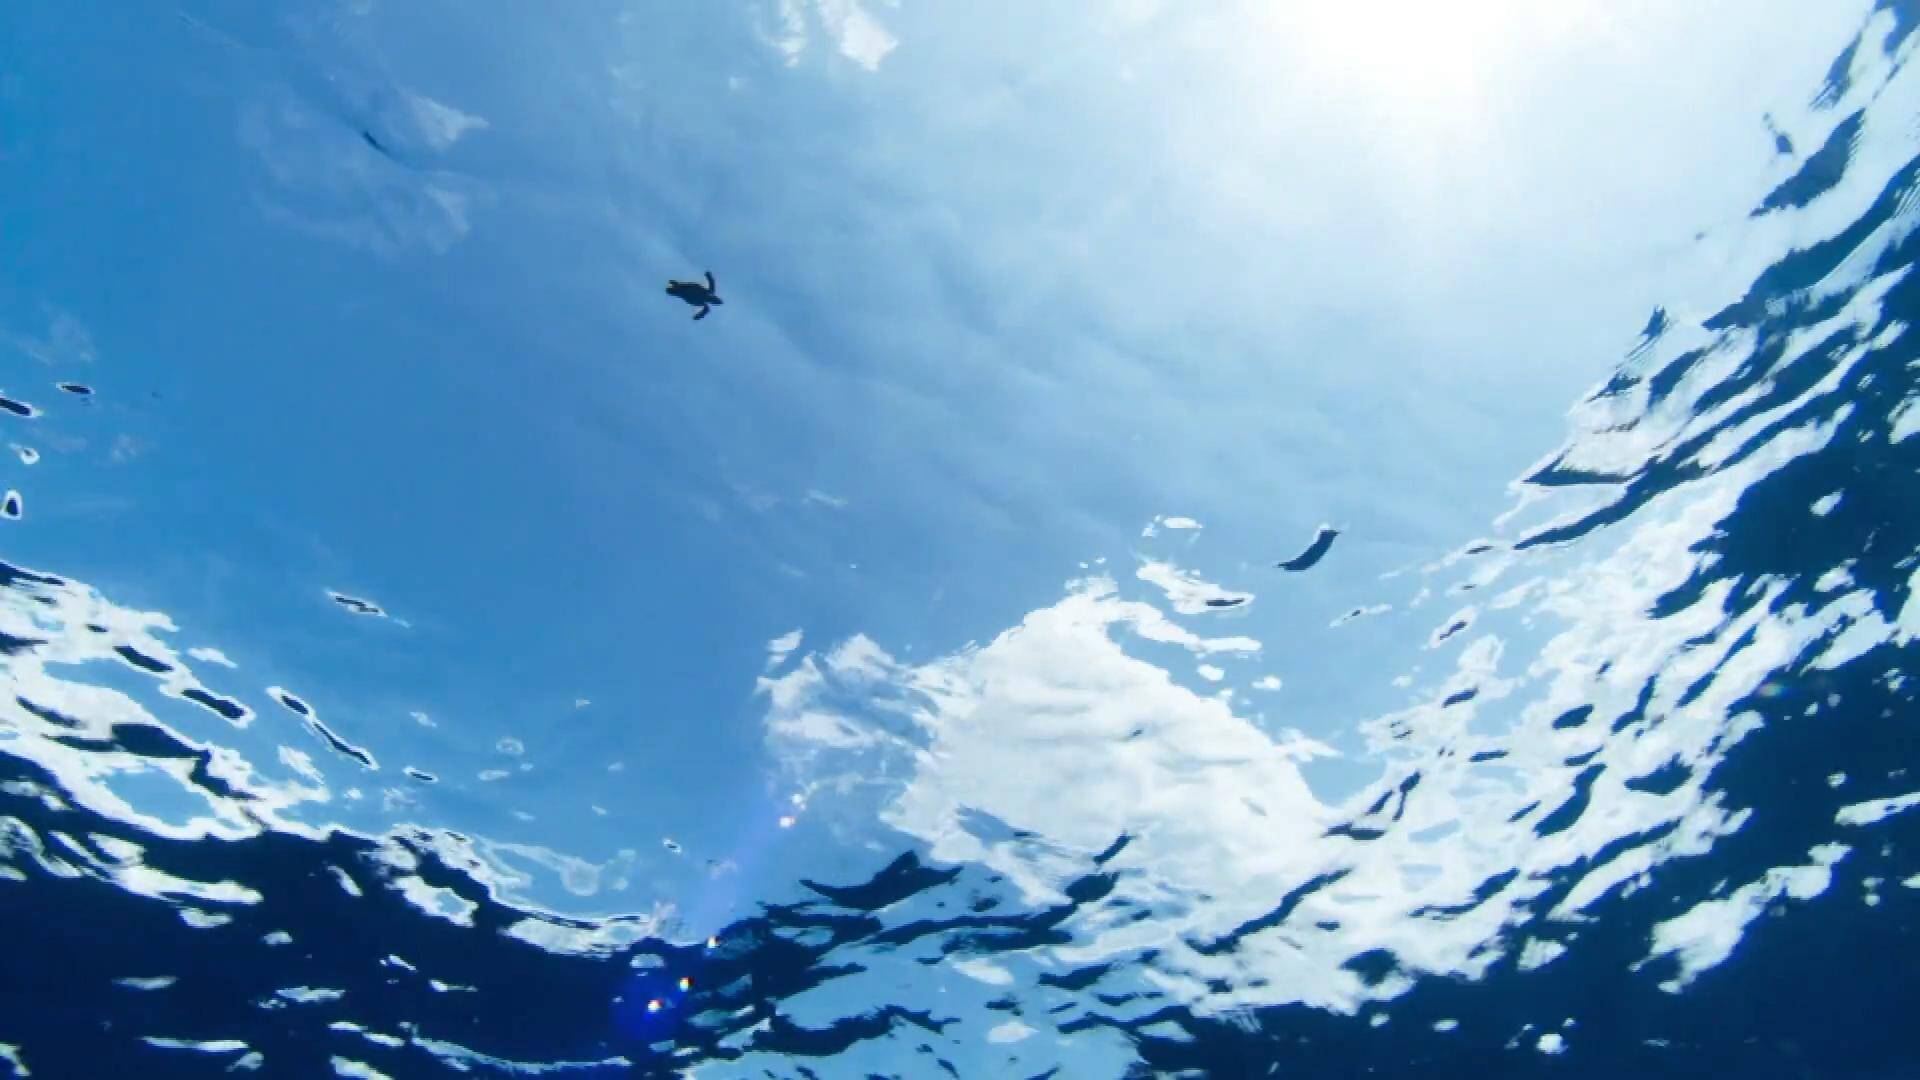 岸绿湾美 鱼鸥翔集 1分钟让你爱上山东这片蔚蓝的海